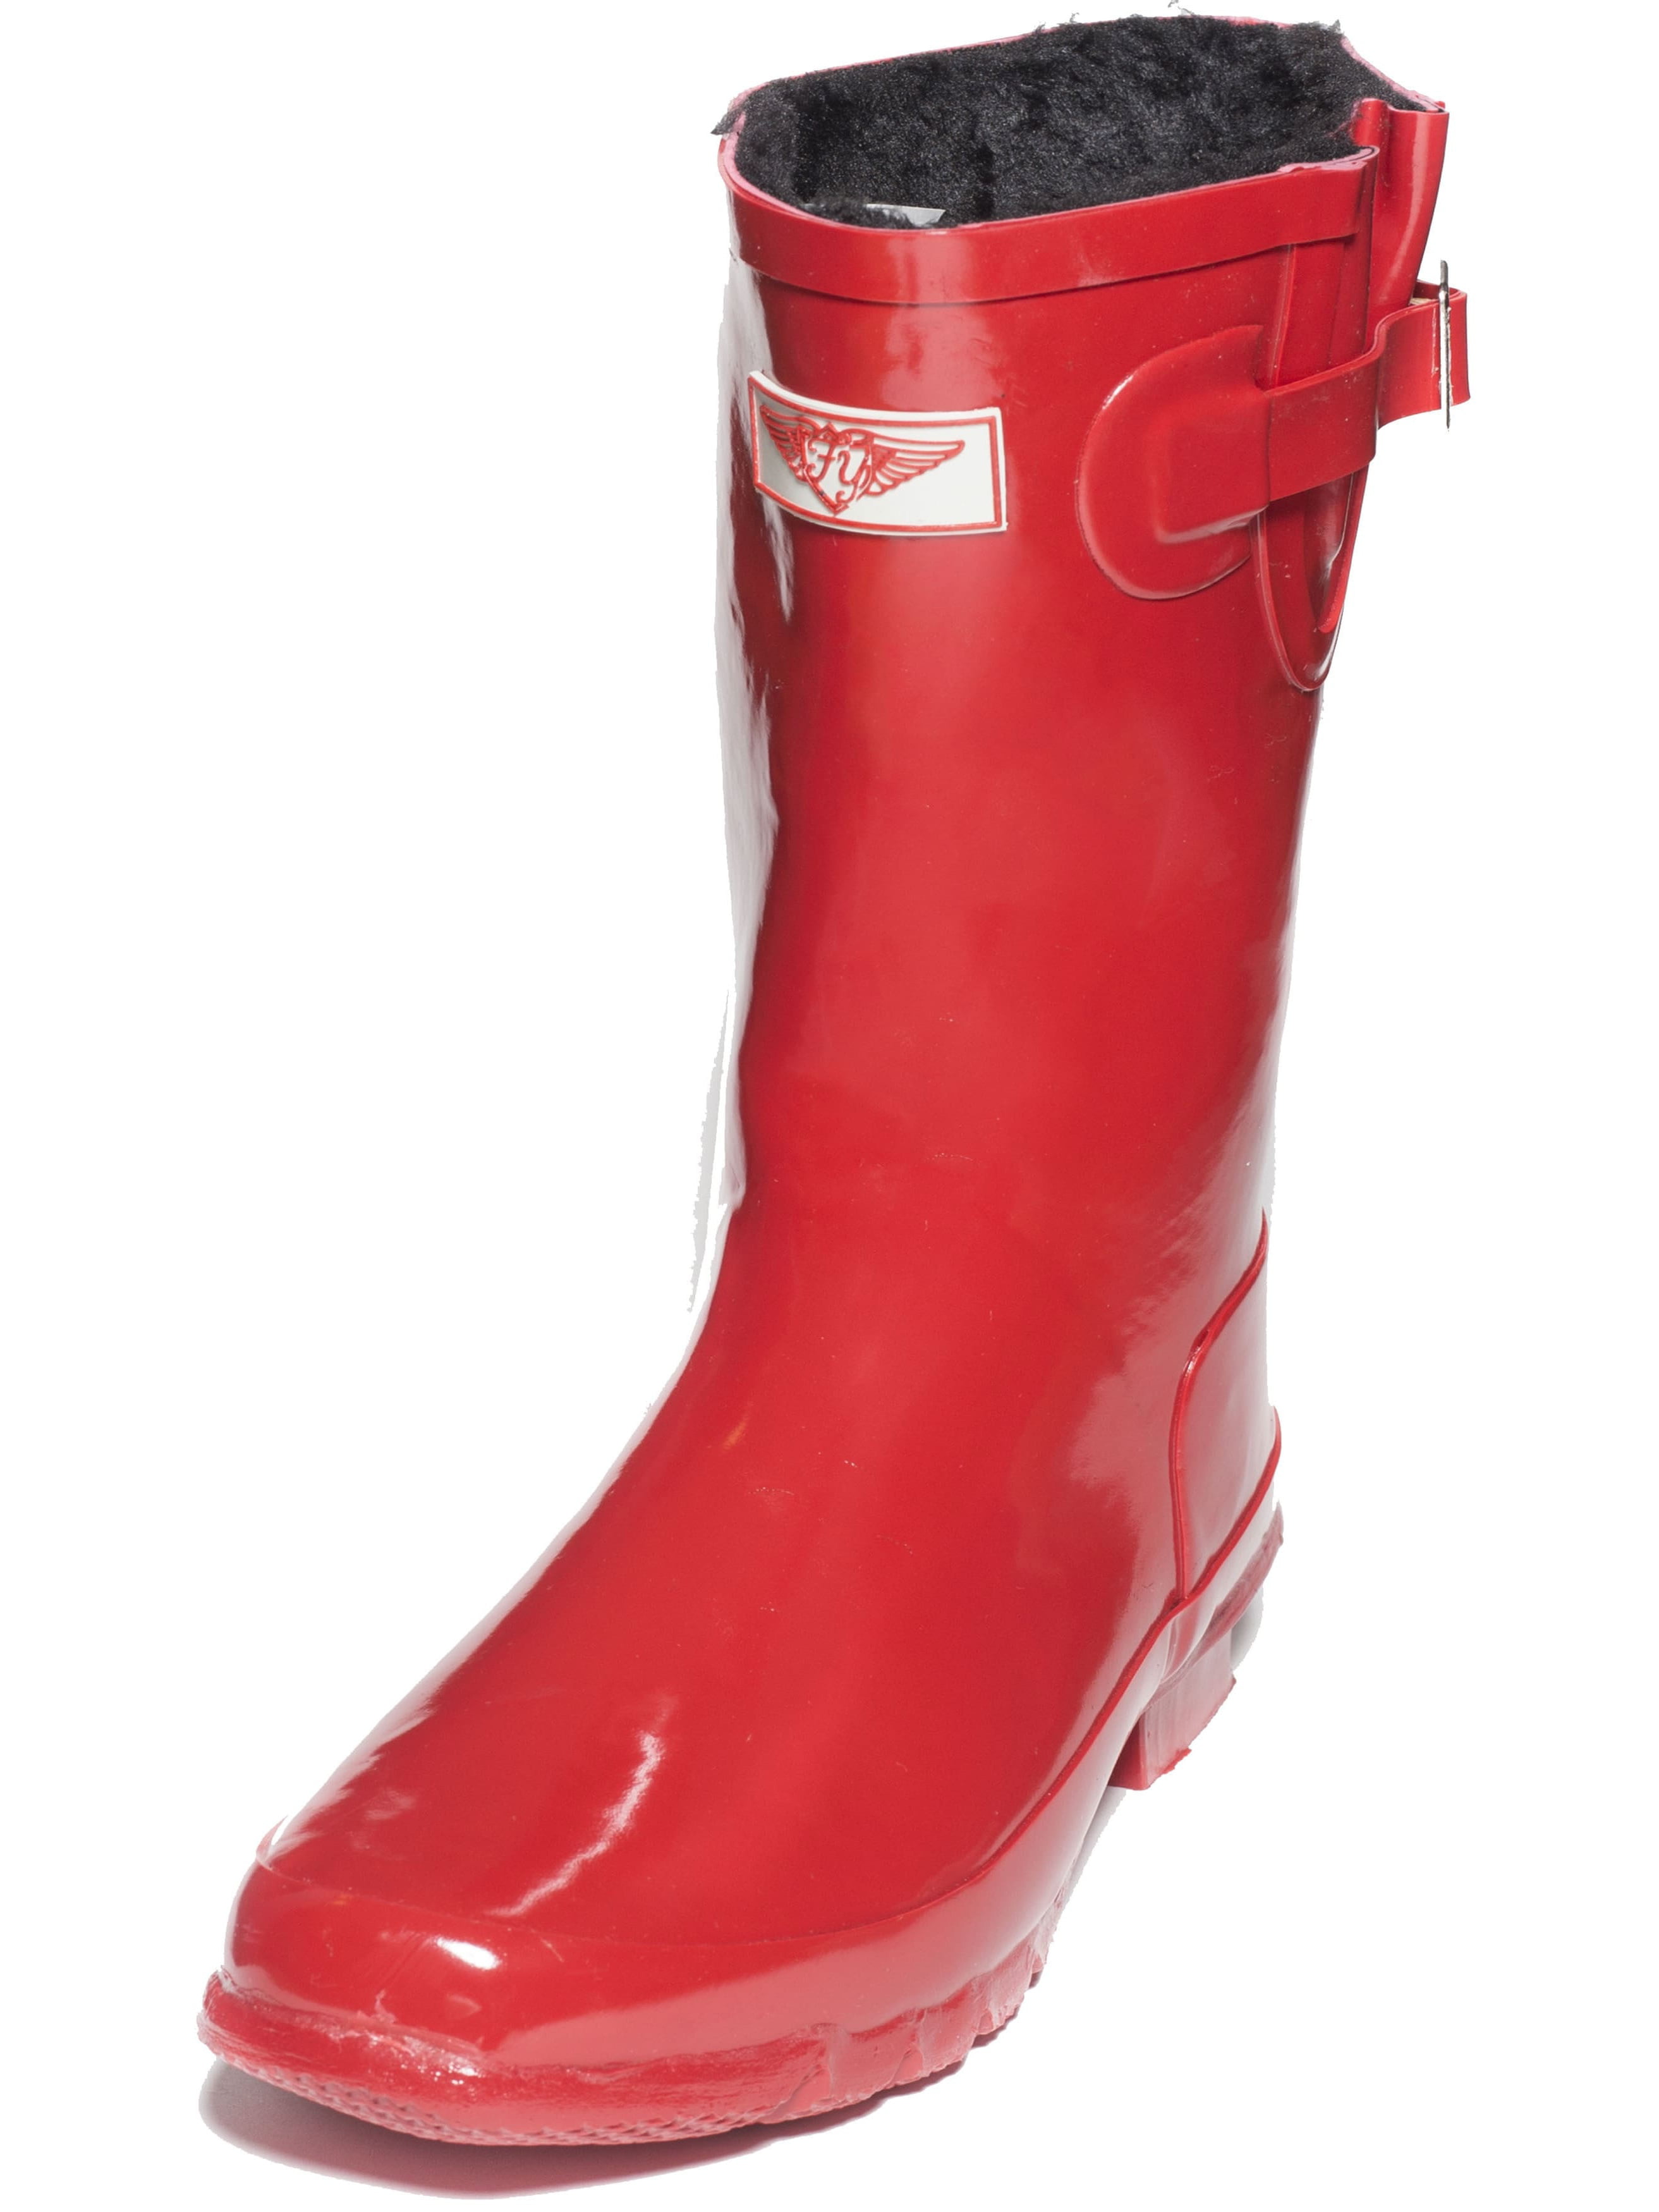 faux fur lined rain boots